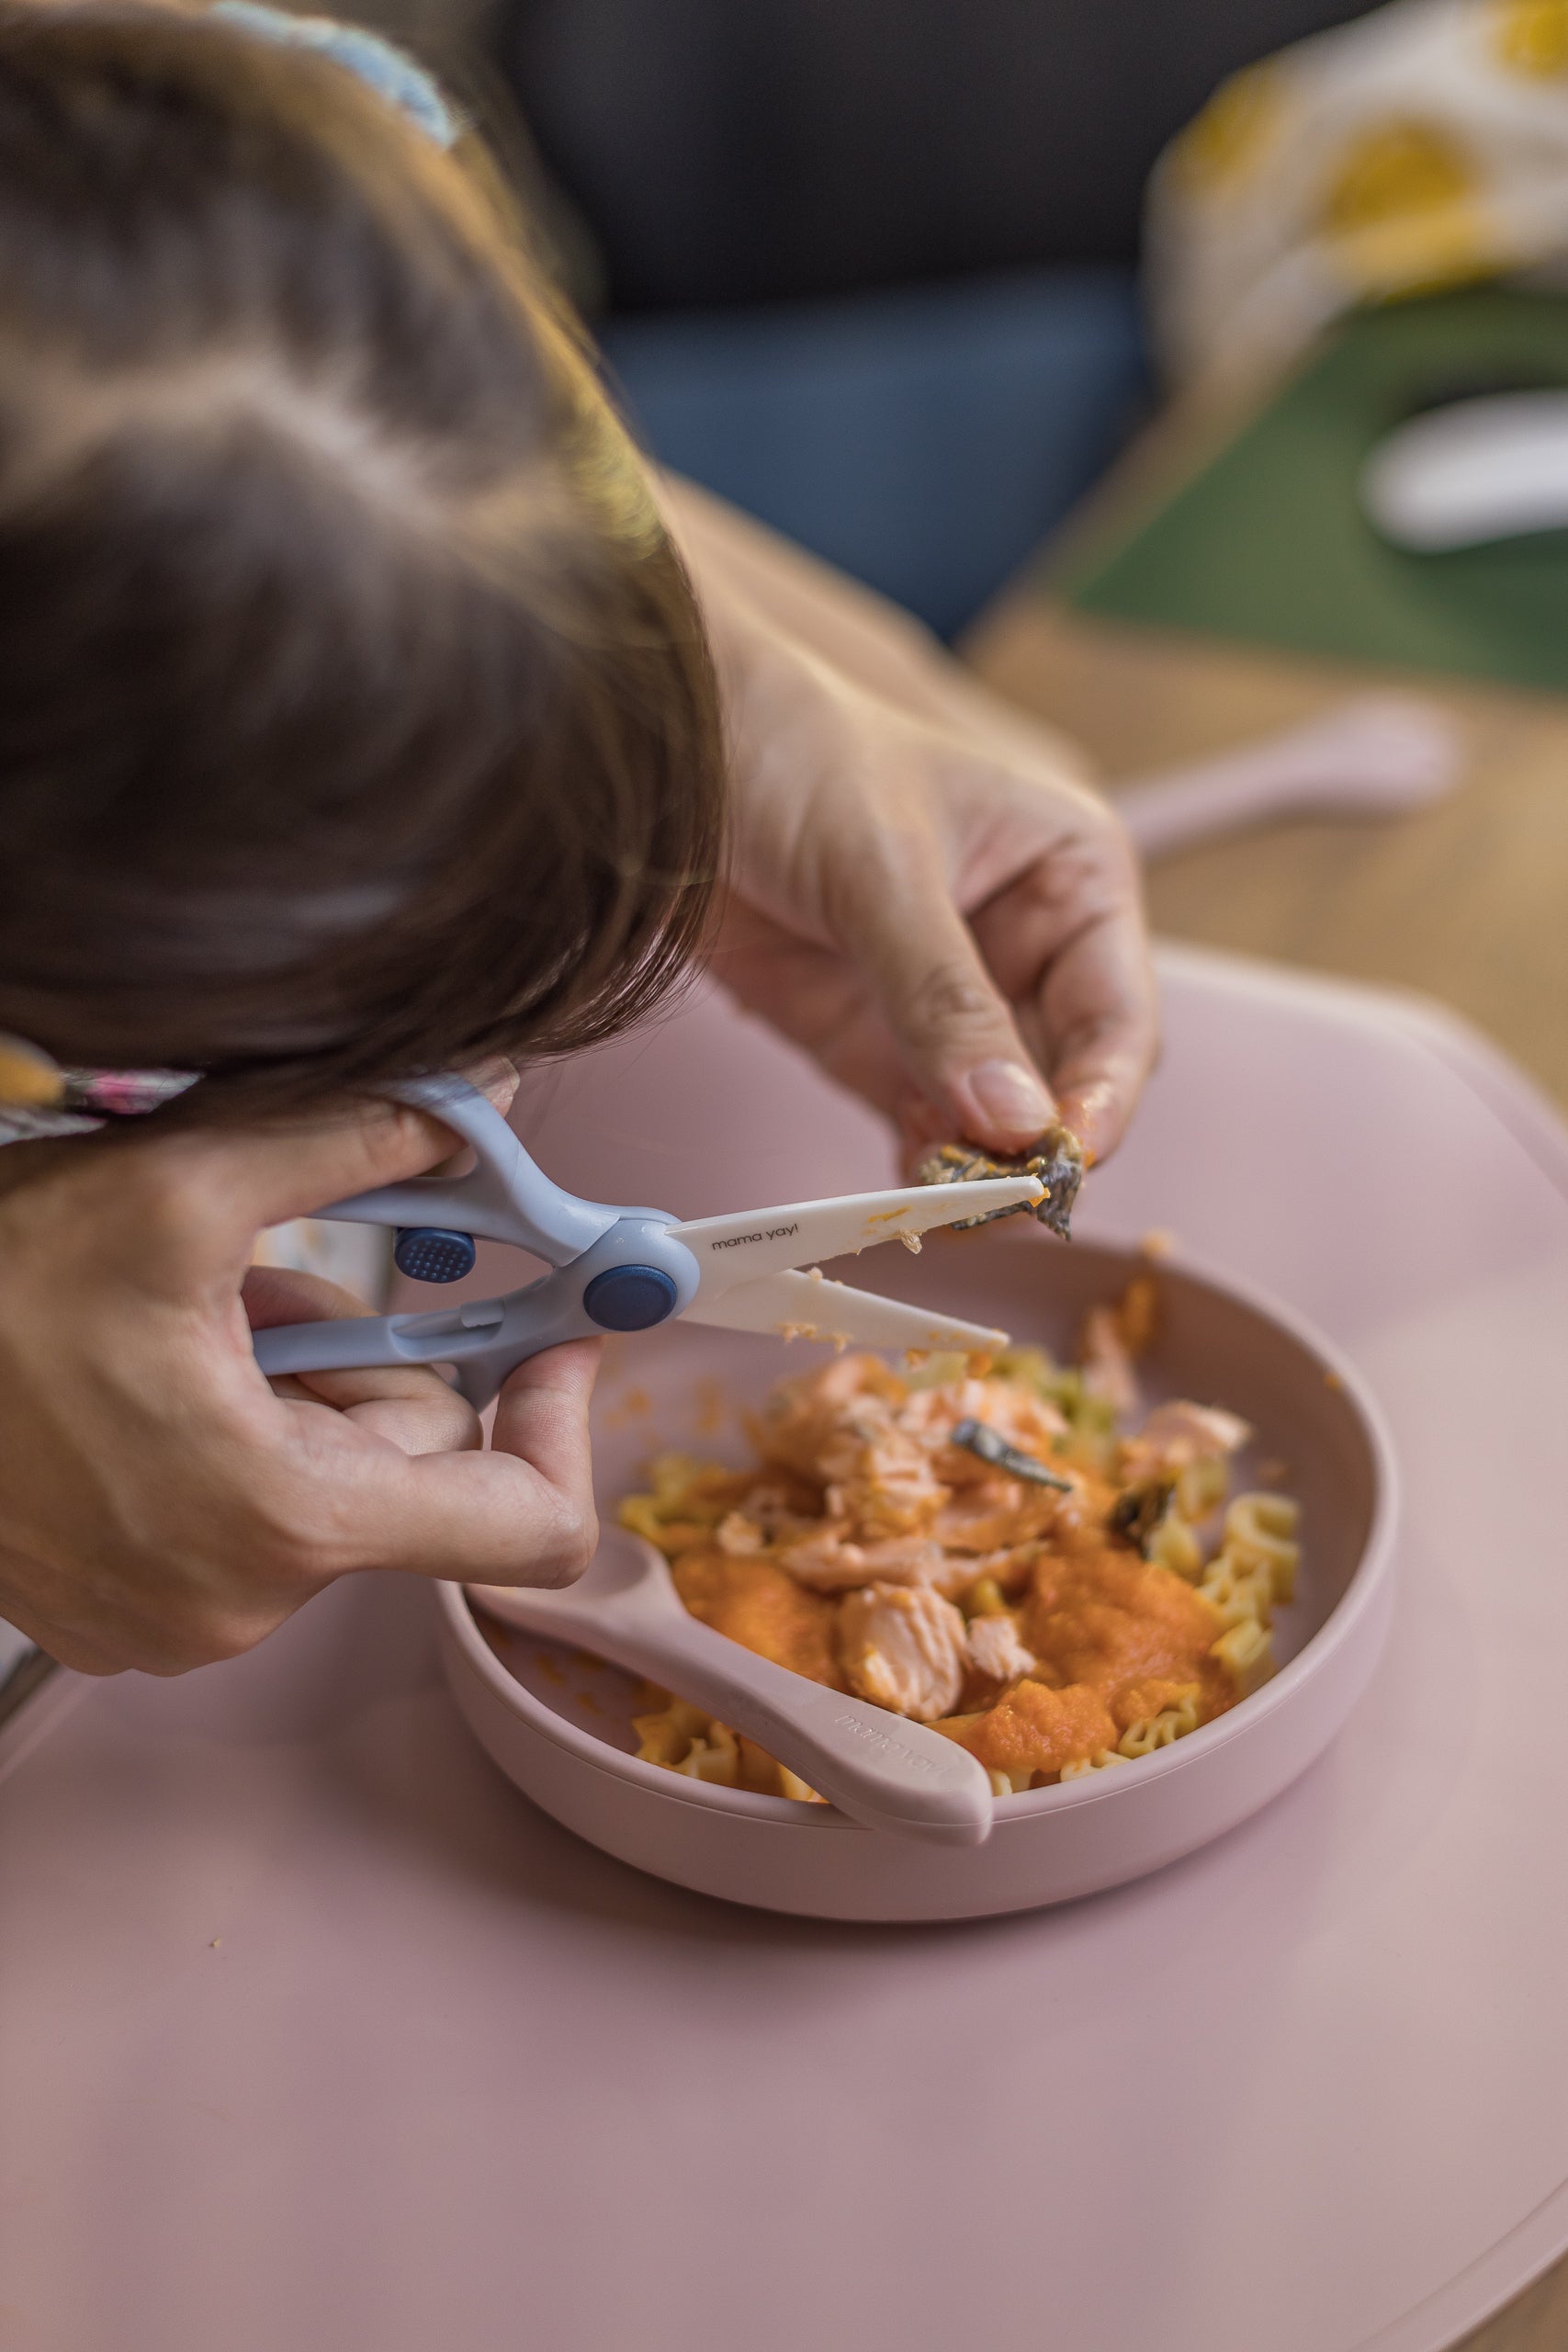 YAY Scissors - Premium Ceramic Scissors for kid's food - WERONE